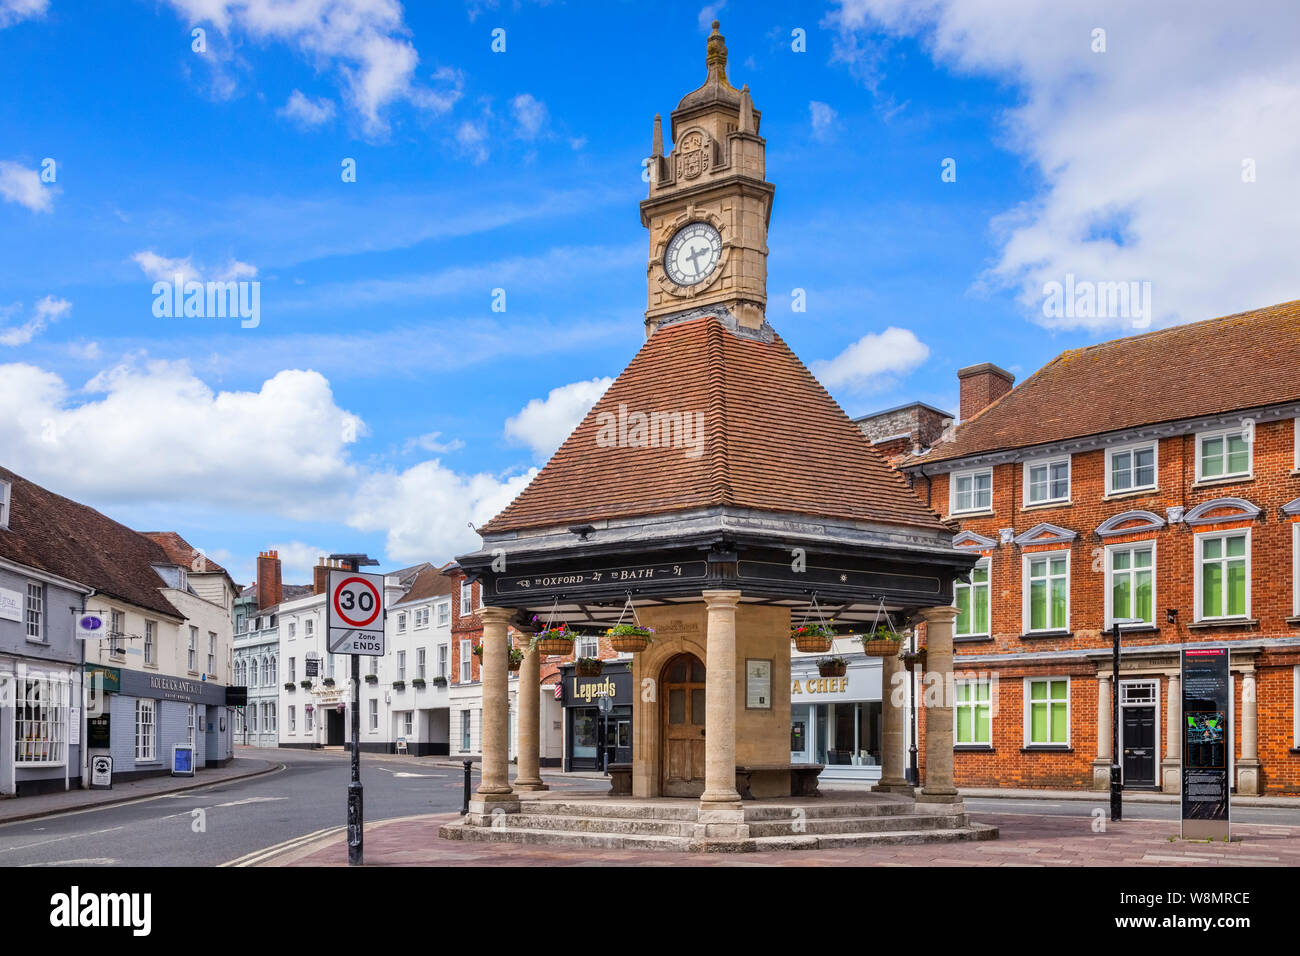 8 juin 2019 : Newbury, Berkshire, Royaume-Uni - La Maison de l'horloge, un tour de l'horloge du 20ème siècle à Newbury, Berkshire. Banque D'Images